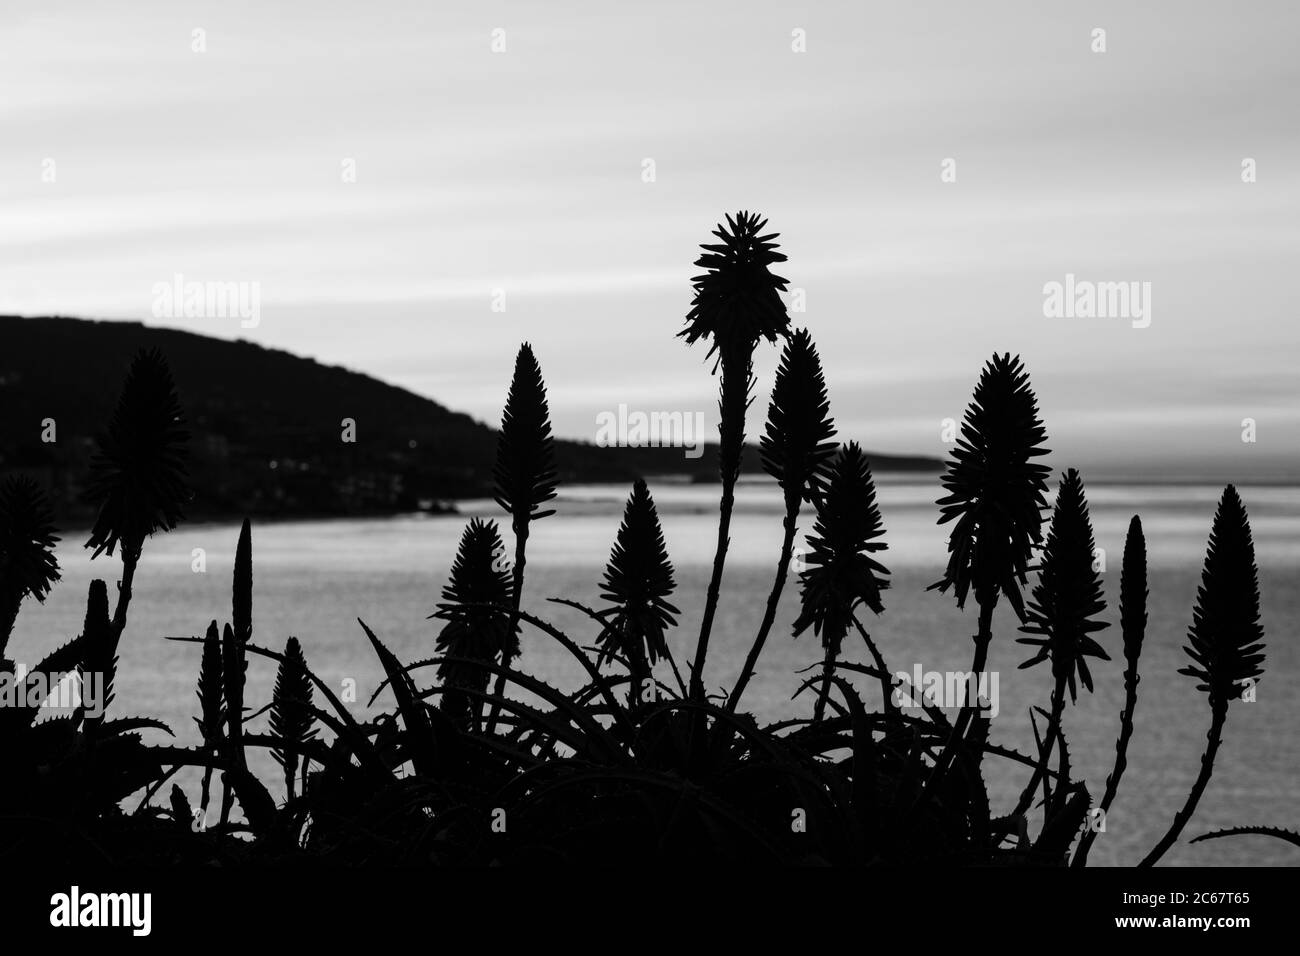 Plants silhouettes against Santa Barbara coast, California, USA Stock Photo